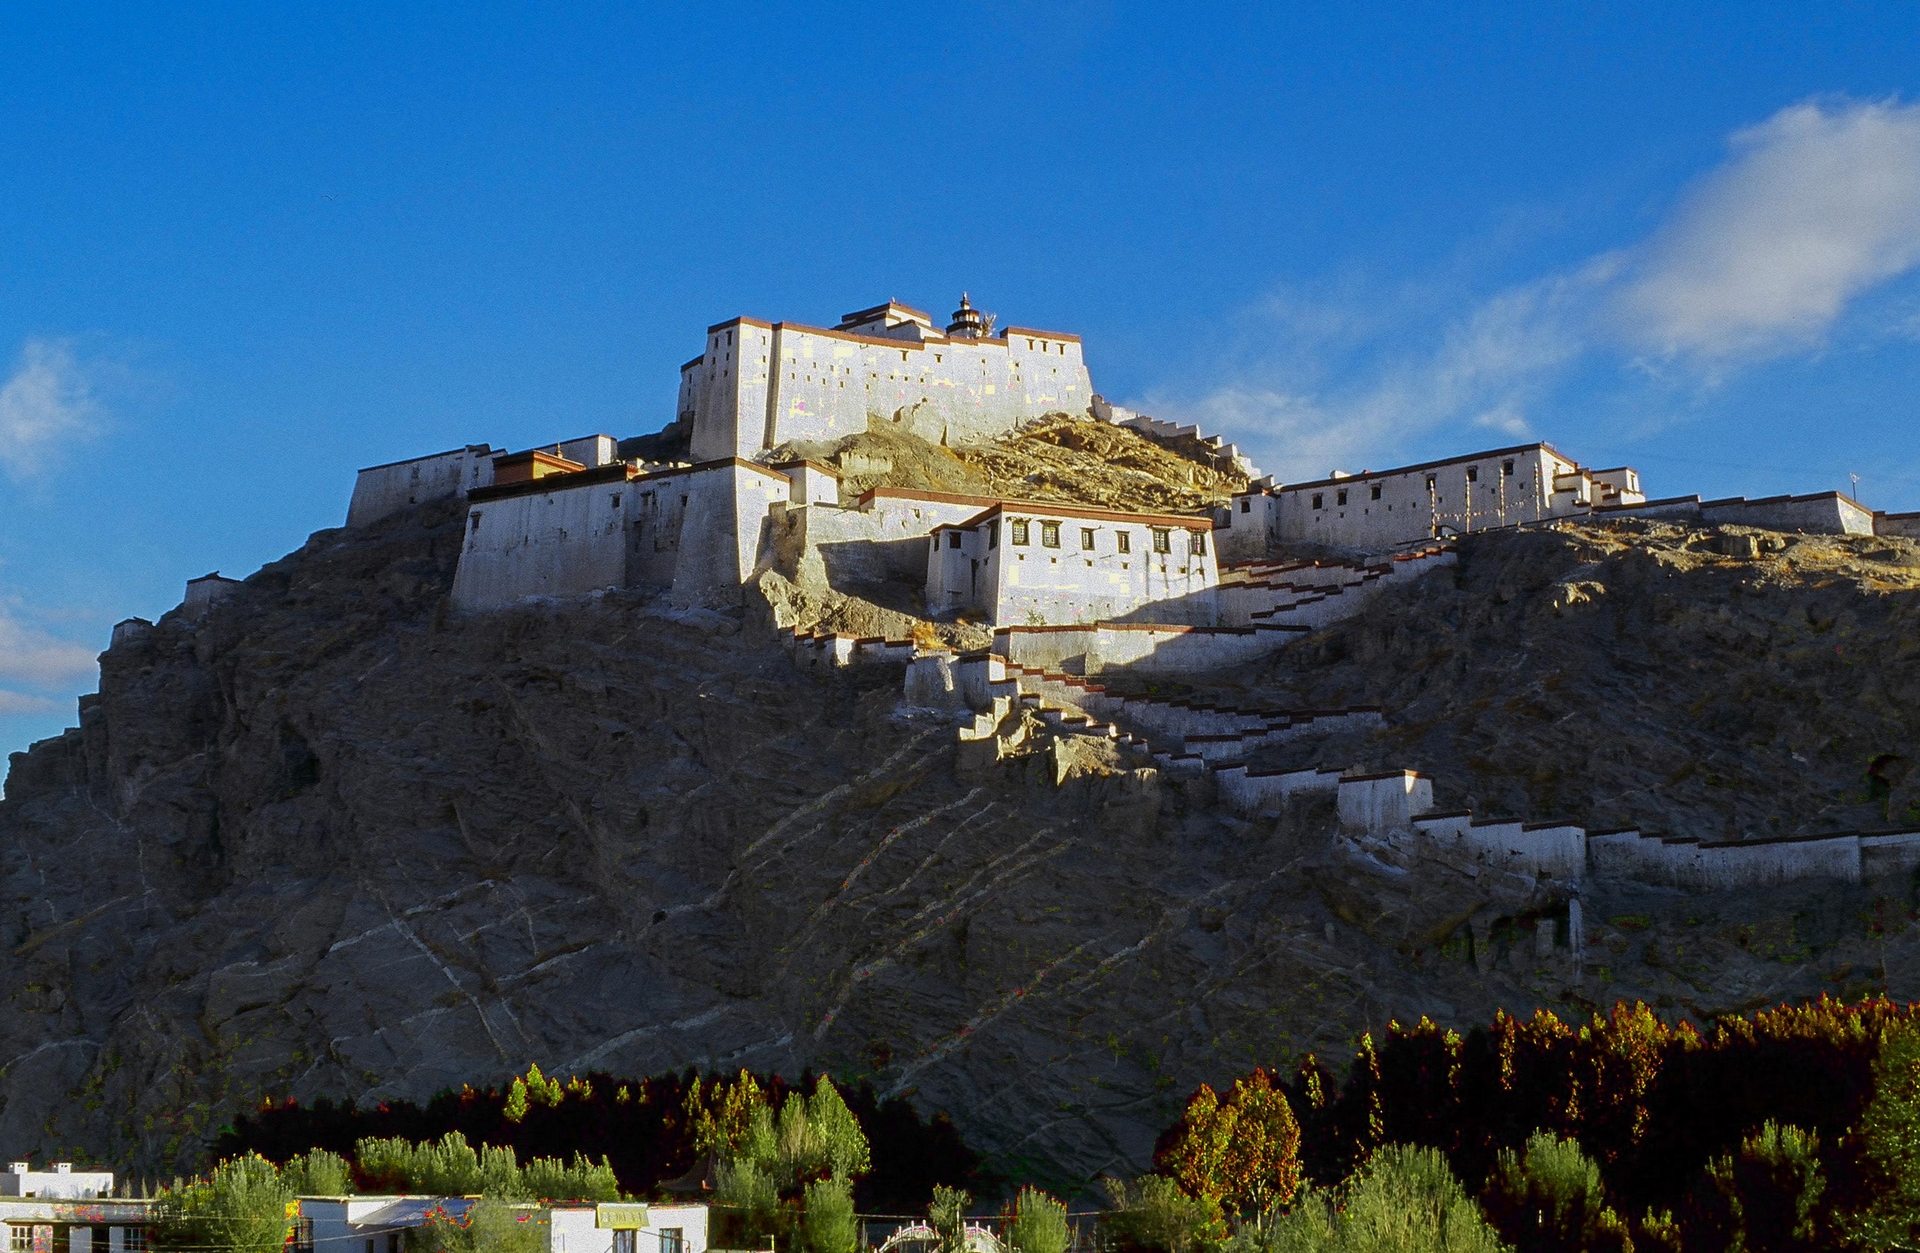 聳立在山頭上的江孜宗山古堡，歷經700年的滄桑歲月，雖然至今仍屹立不搖在西藏高原上，但他的悲壯抗英歷史卻讓人不勝唏噓。